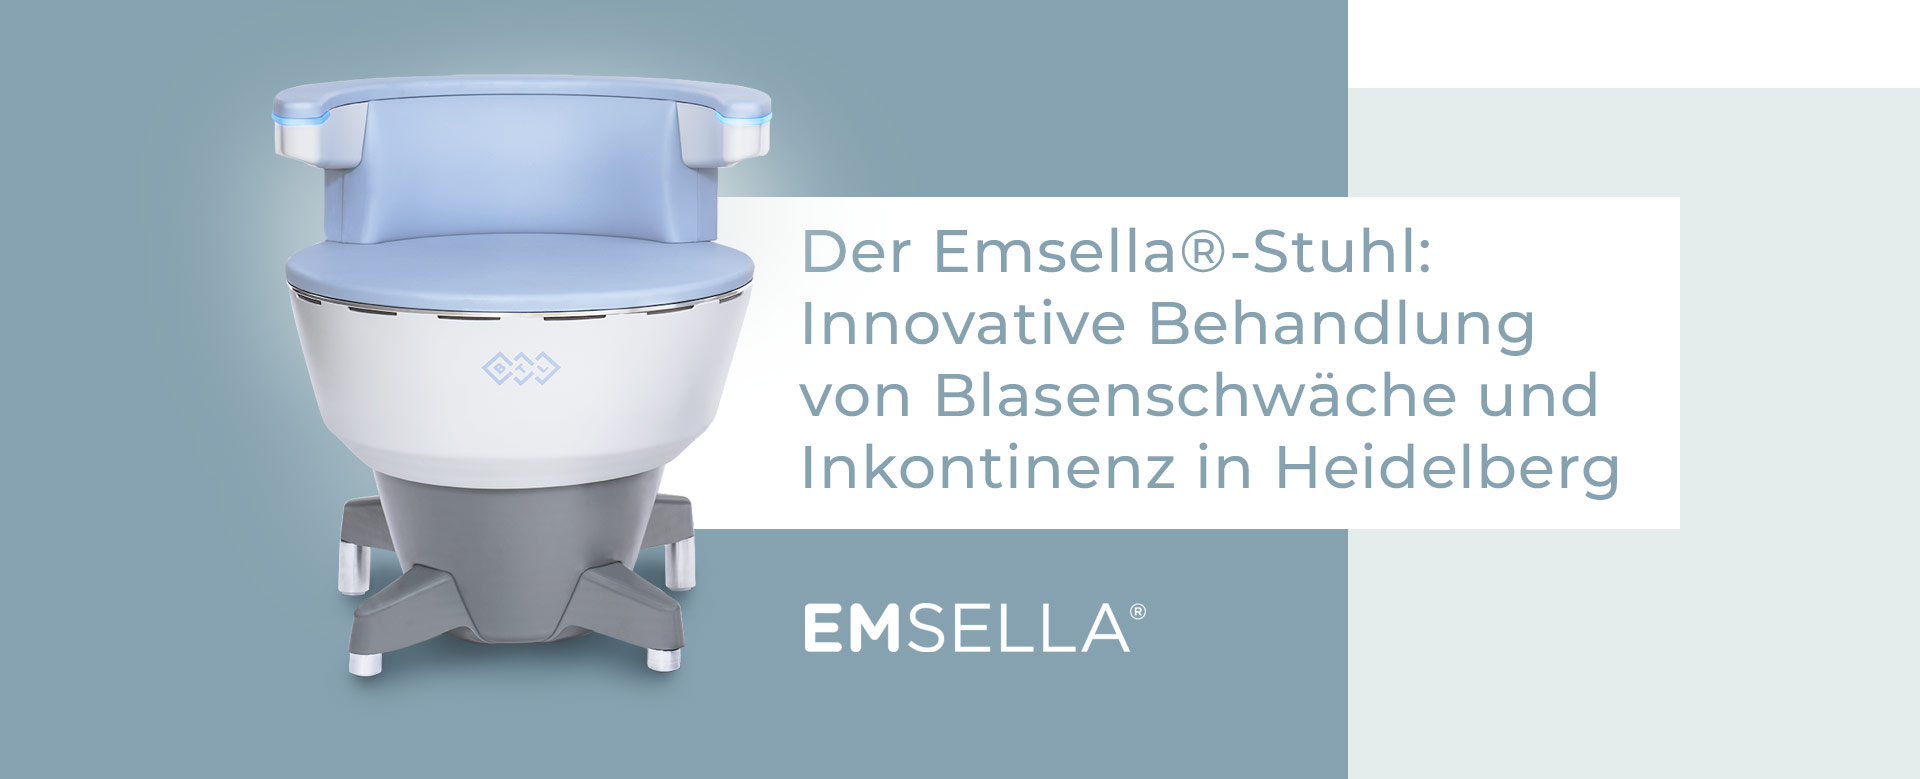 EMSELLA-Stuhl: Behandlung von Blasenschwäche und Inkontinenz in Heidelberg